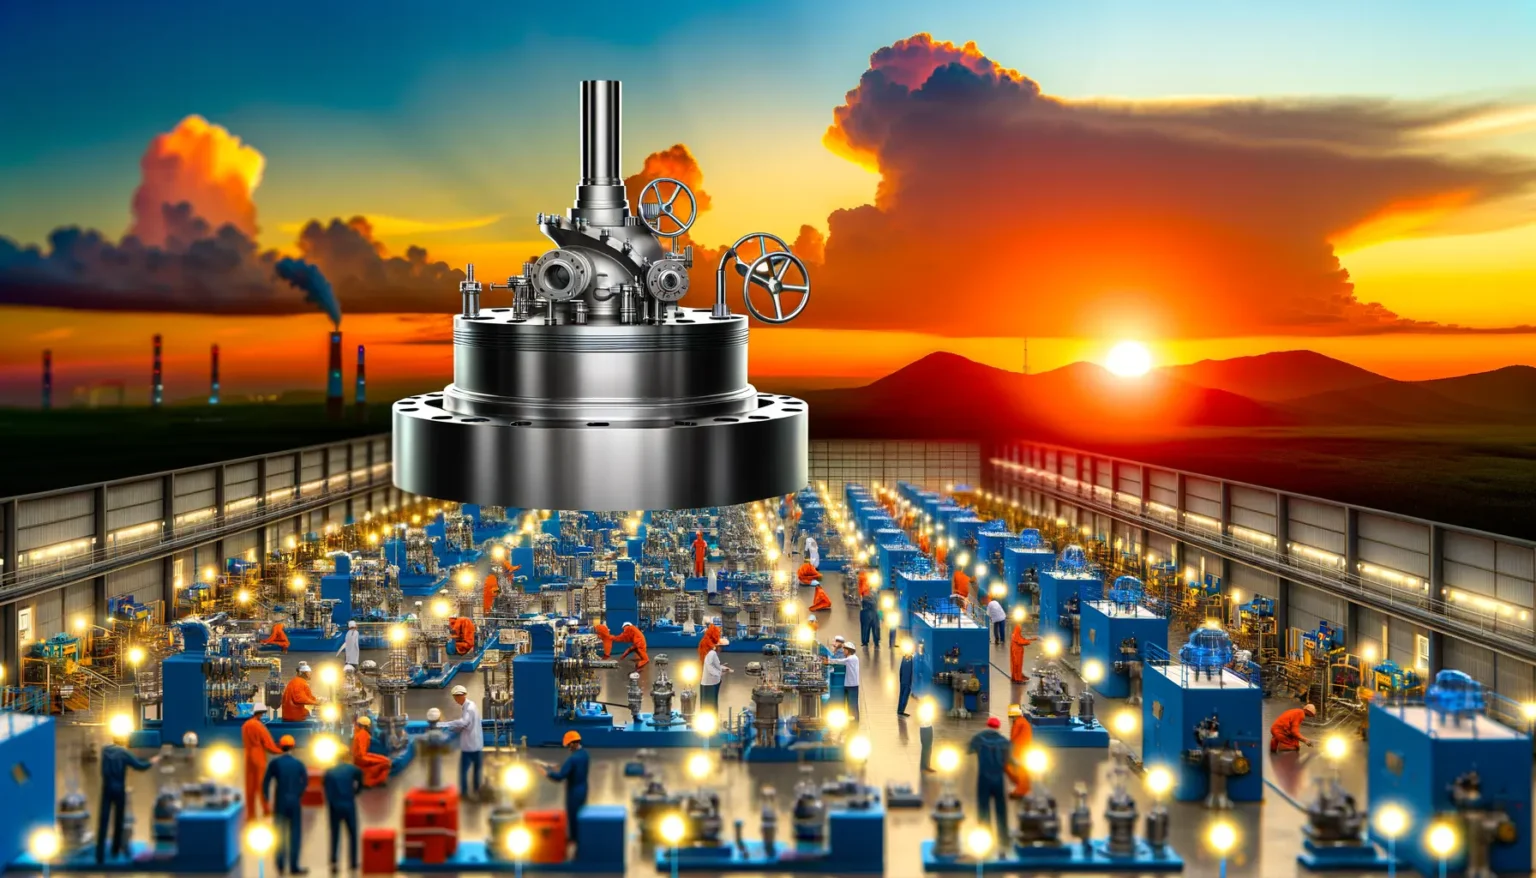 Eine Futuristische Darstellung einer Fabrikhalle mit zahlreichen Arbeitern an verschiedenen Maschinen, überlagert von einem großen Ventil im Vordergrund und einem dramatischen Sonnenuntergang im Hintergrund, der über einer industrielandschaftlichen Szenerie mit rauchenden Schloten aufgeht.